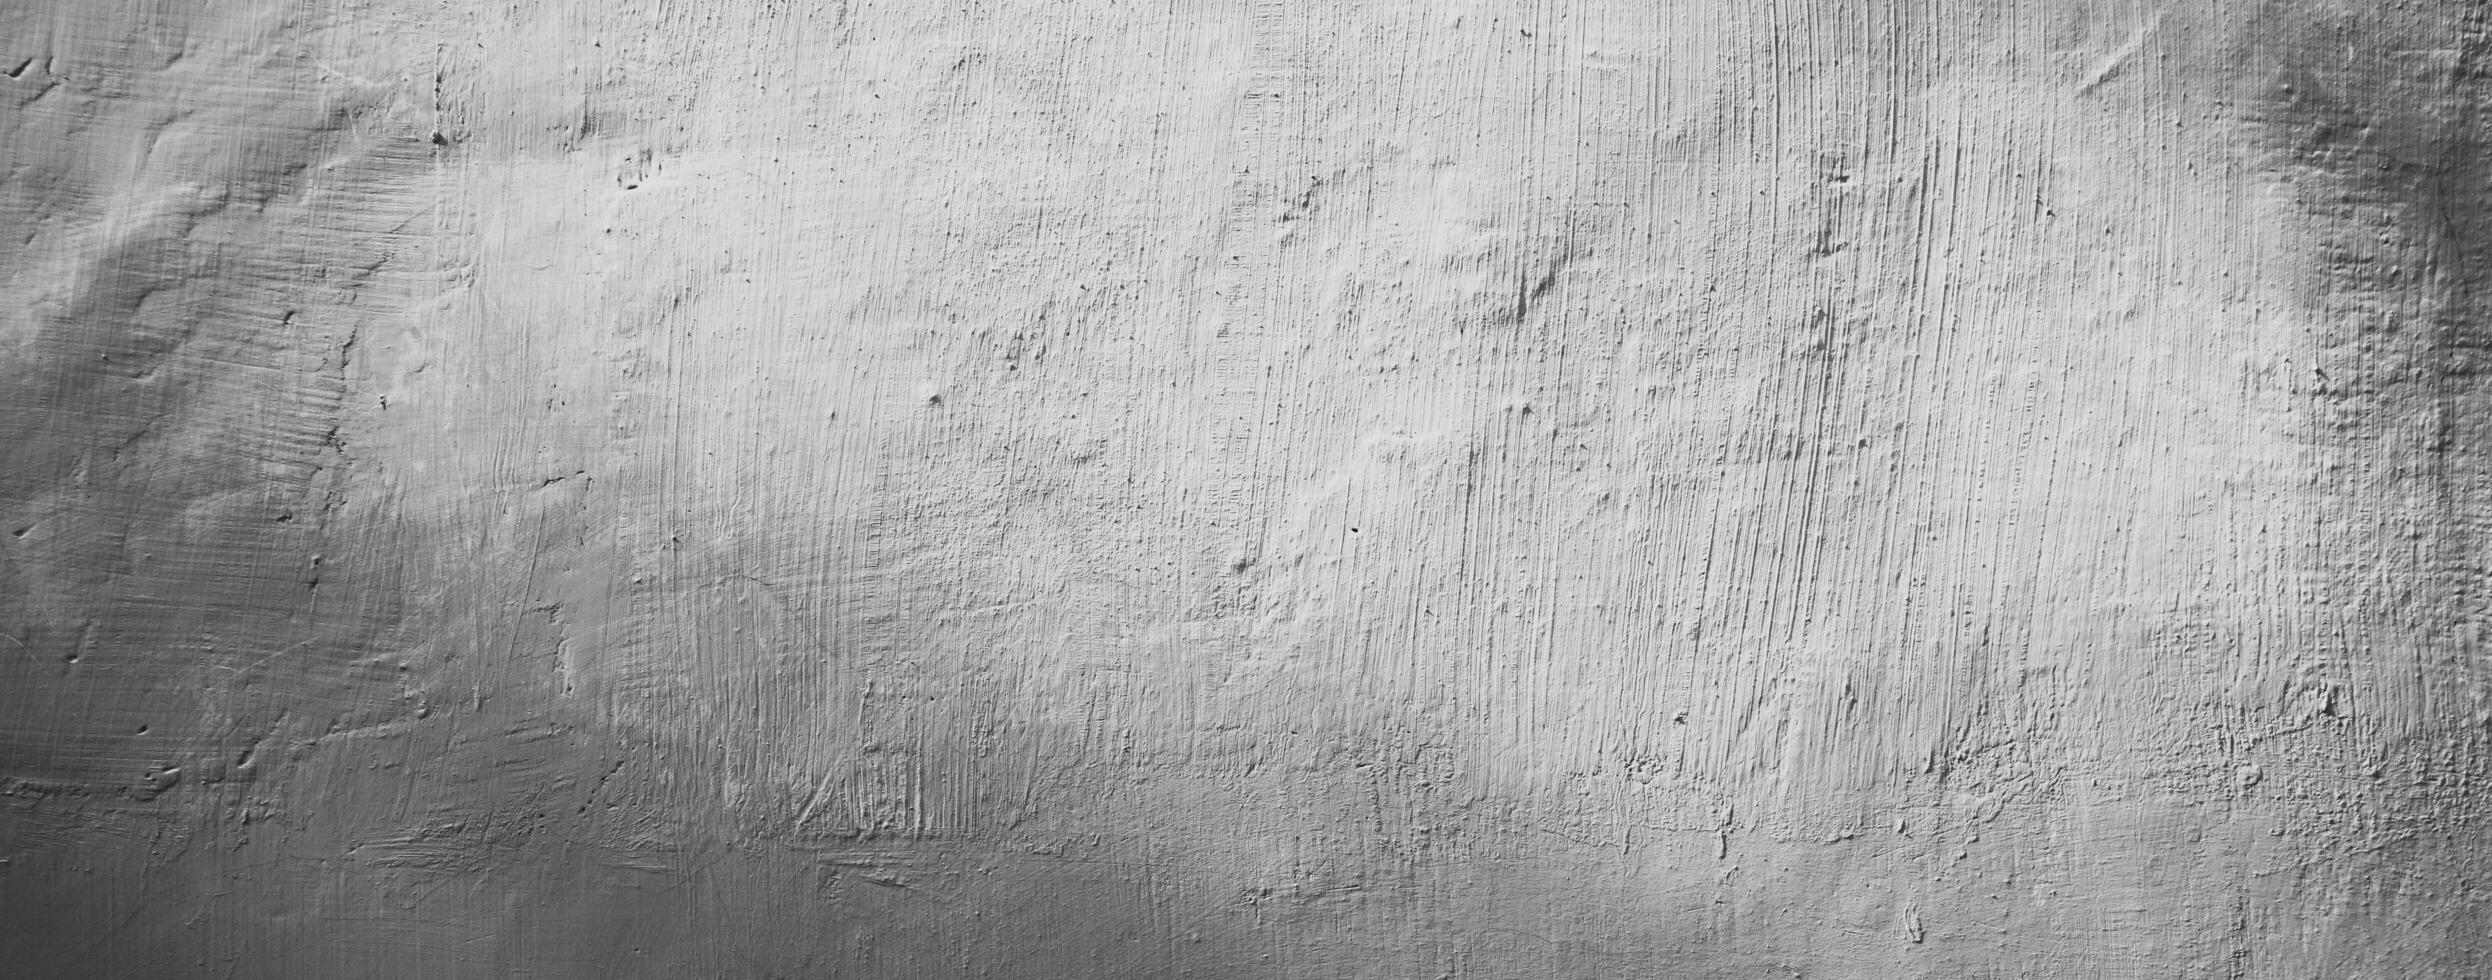 abstrakter weißer Wandbeschaffenheitshintergrund foto